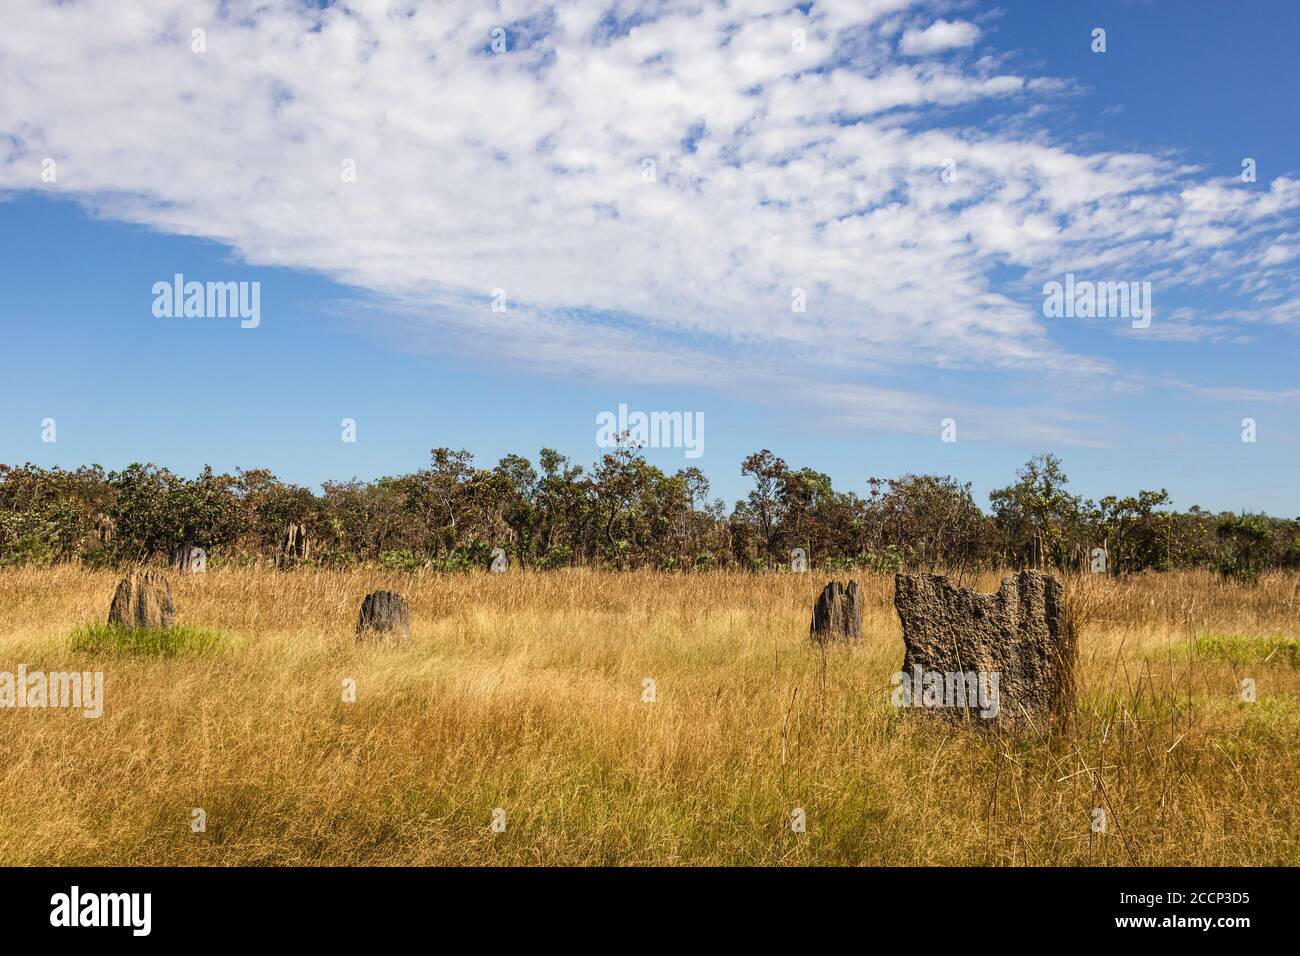 Magnetische Termitenhügel, die auf einem trockenen Feld wachsen, Ausrichtung Nord-Süd. Haus für Termiten Insekten. CEDiting-Bereich. Litchfield, Australien Stockfoto